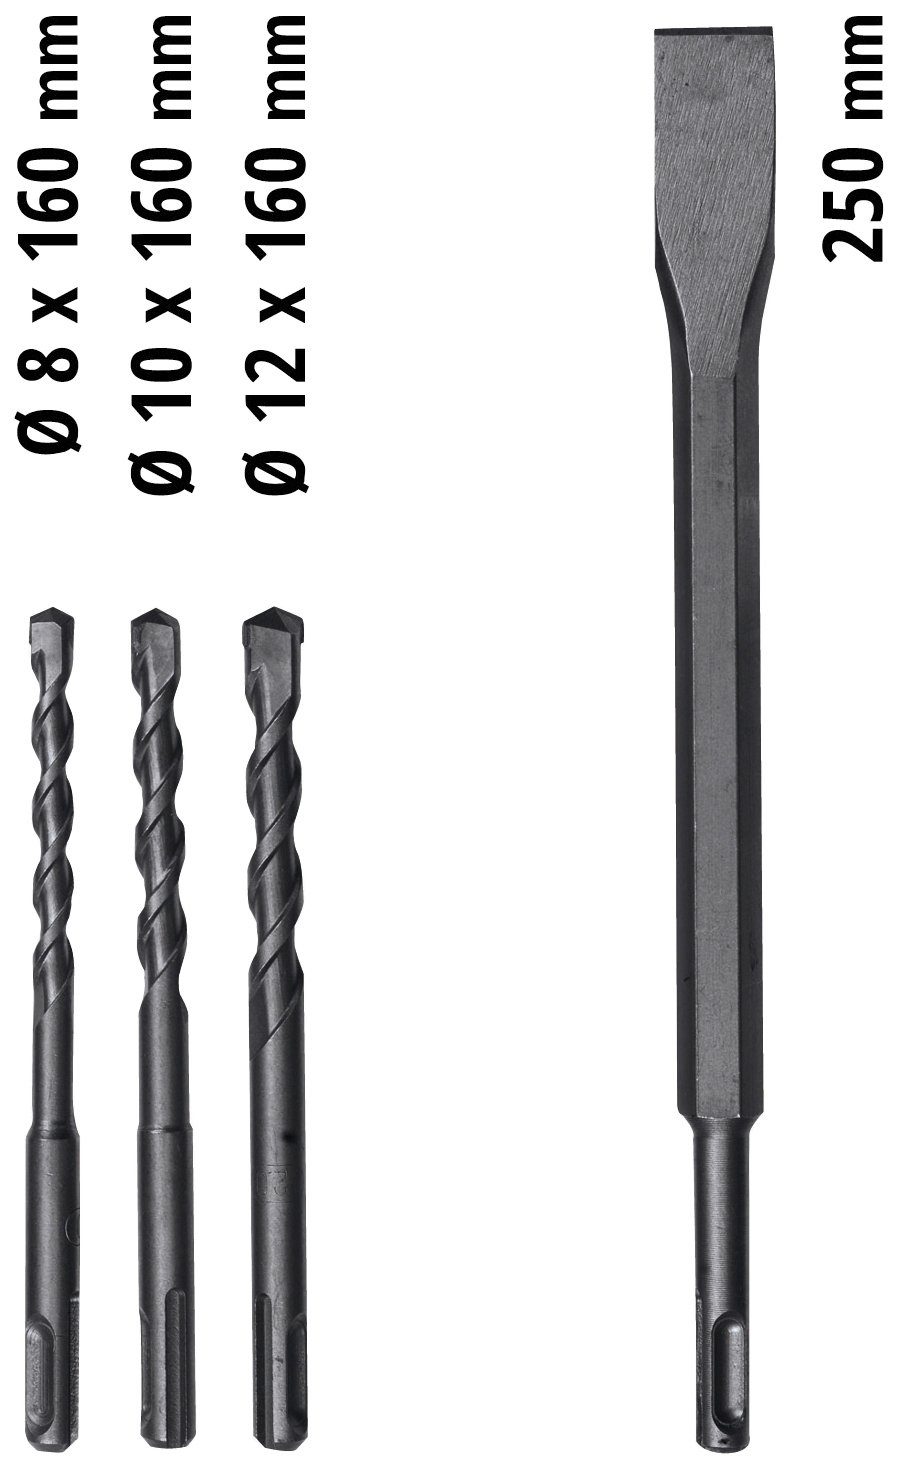 620 Bohrhammer TC-RH 4F Kit, Einhell 230 V